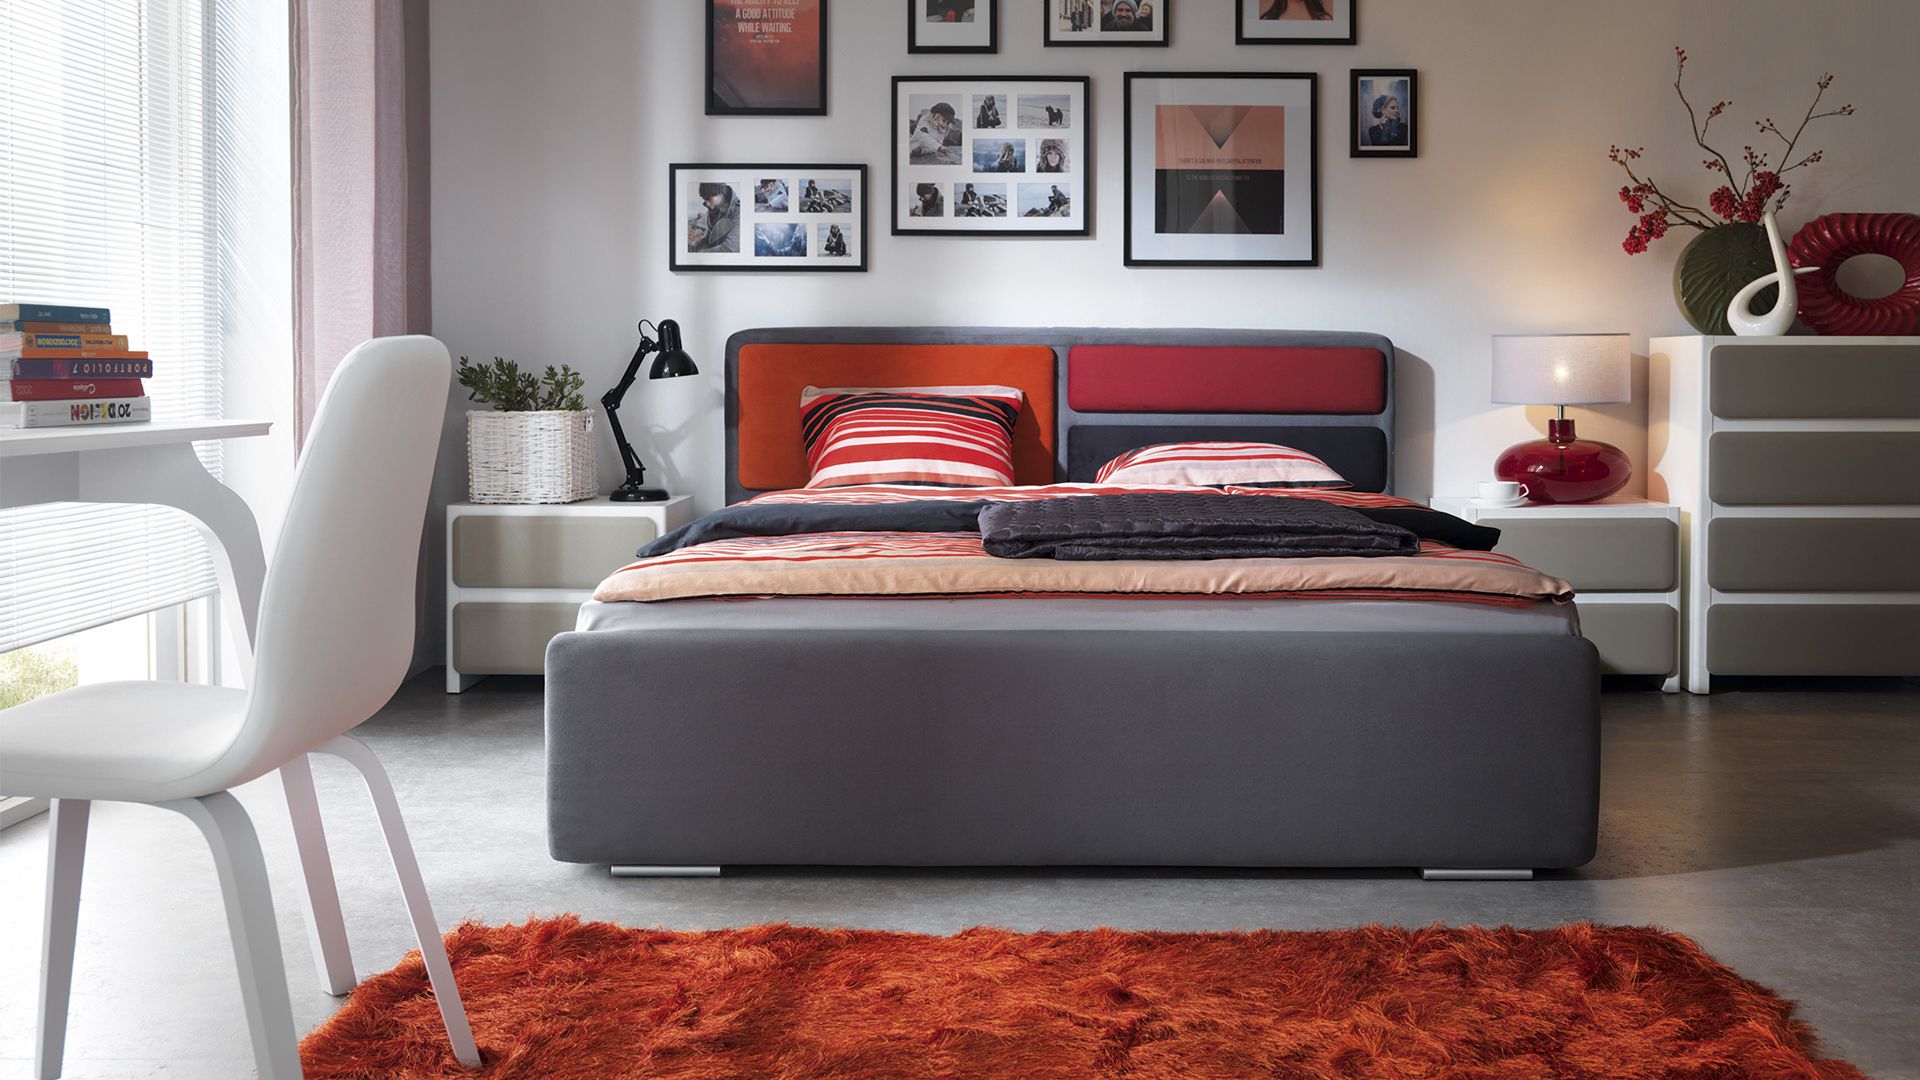 Sypialnia Possi. Łóżko oraz zagłówek dostępne są w wielu opcjach kolorystycznych. Fot. Black Red White 